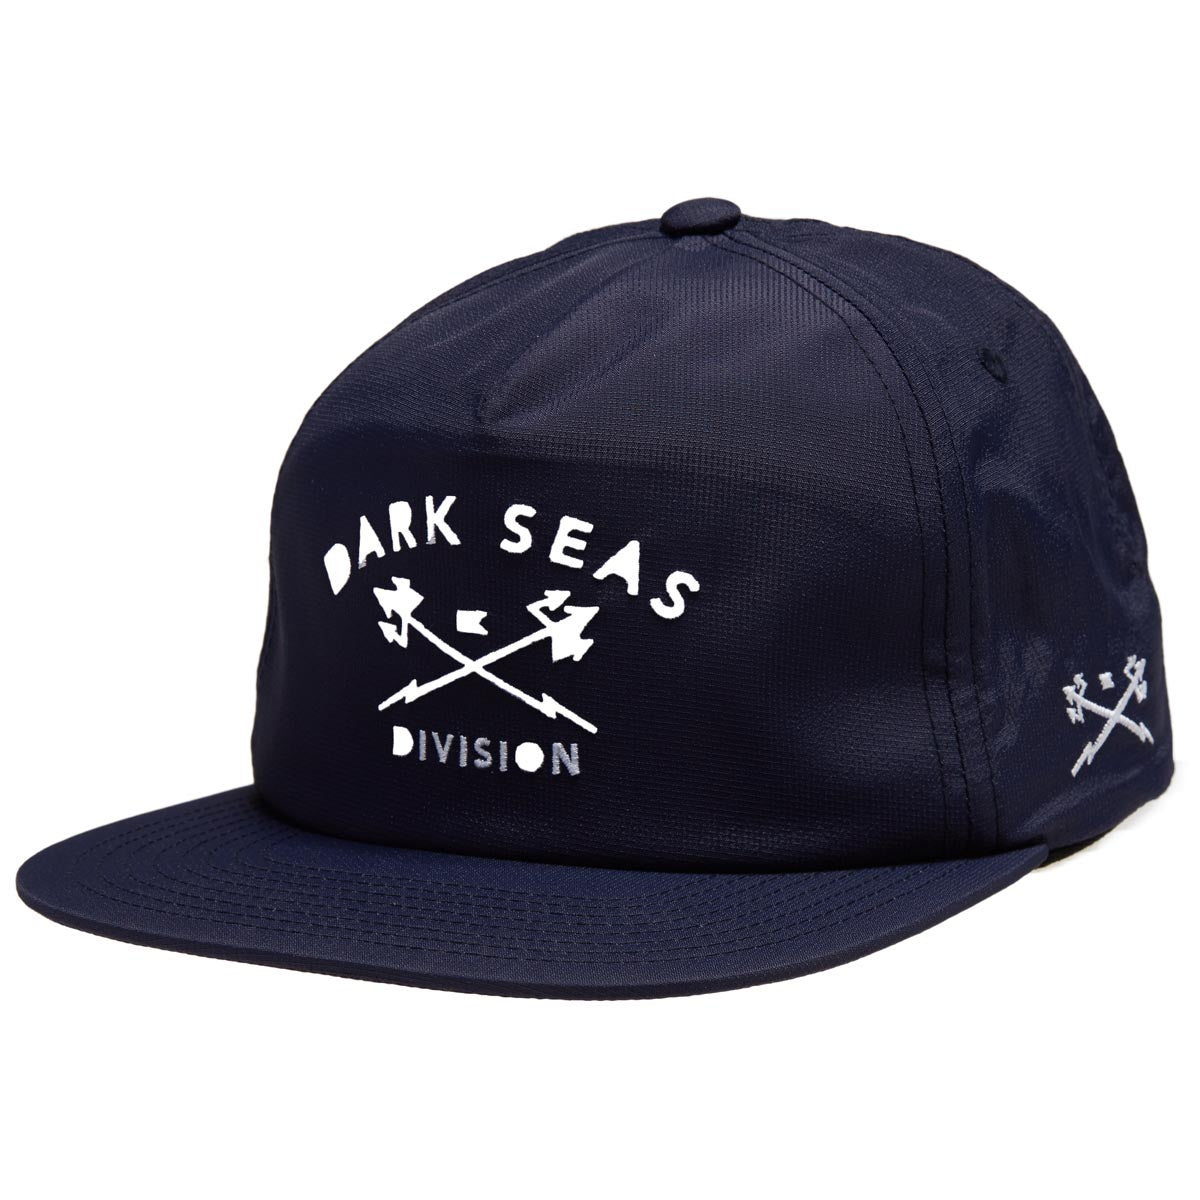 Dark Seas Tridents Nylon Hat - Navy image 1